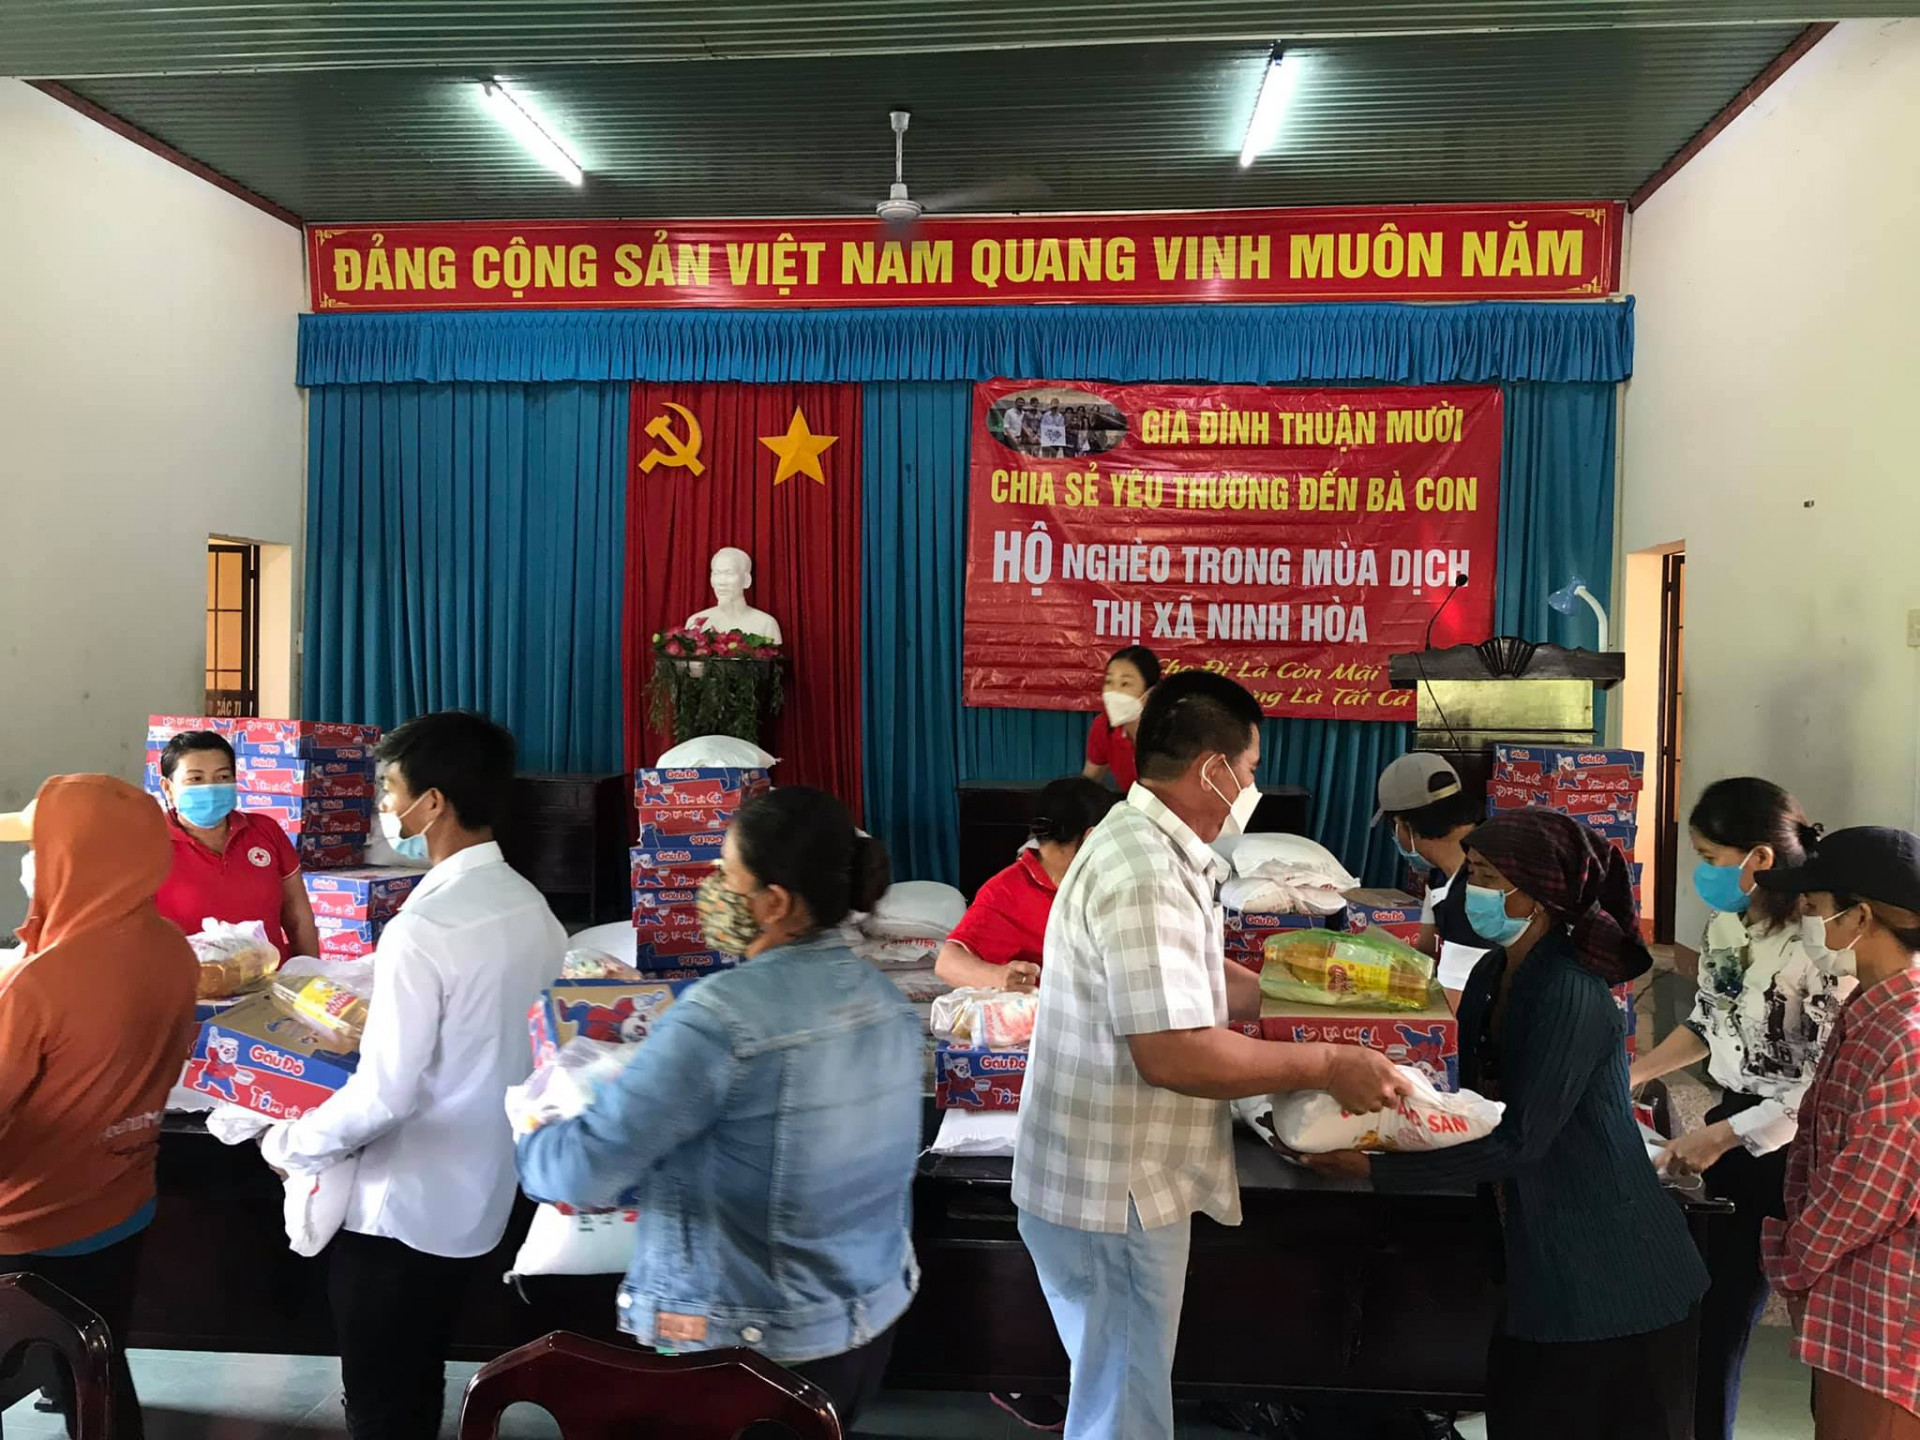 Các phần quà của vợ chồng anh chị Thuận Mười được trao cho các hộ nghèo, hộ cận nghèo trên địa bàn thị xã Ninh Hòa.